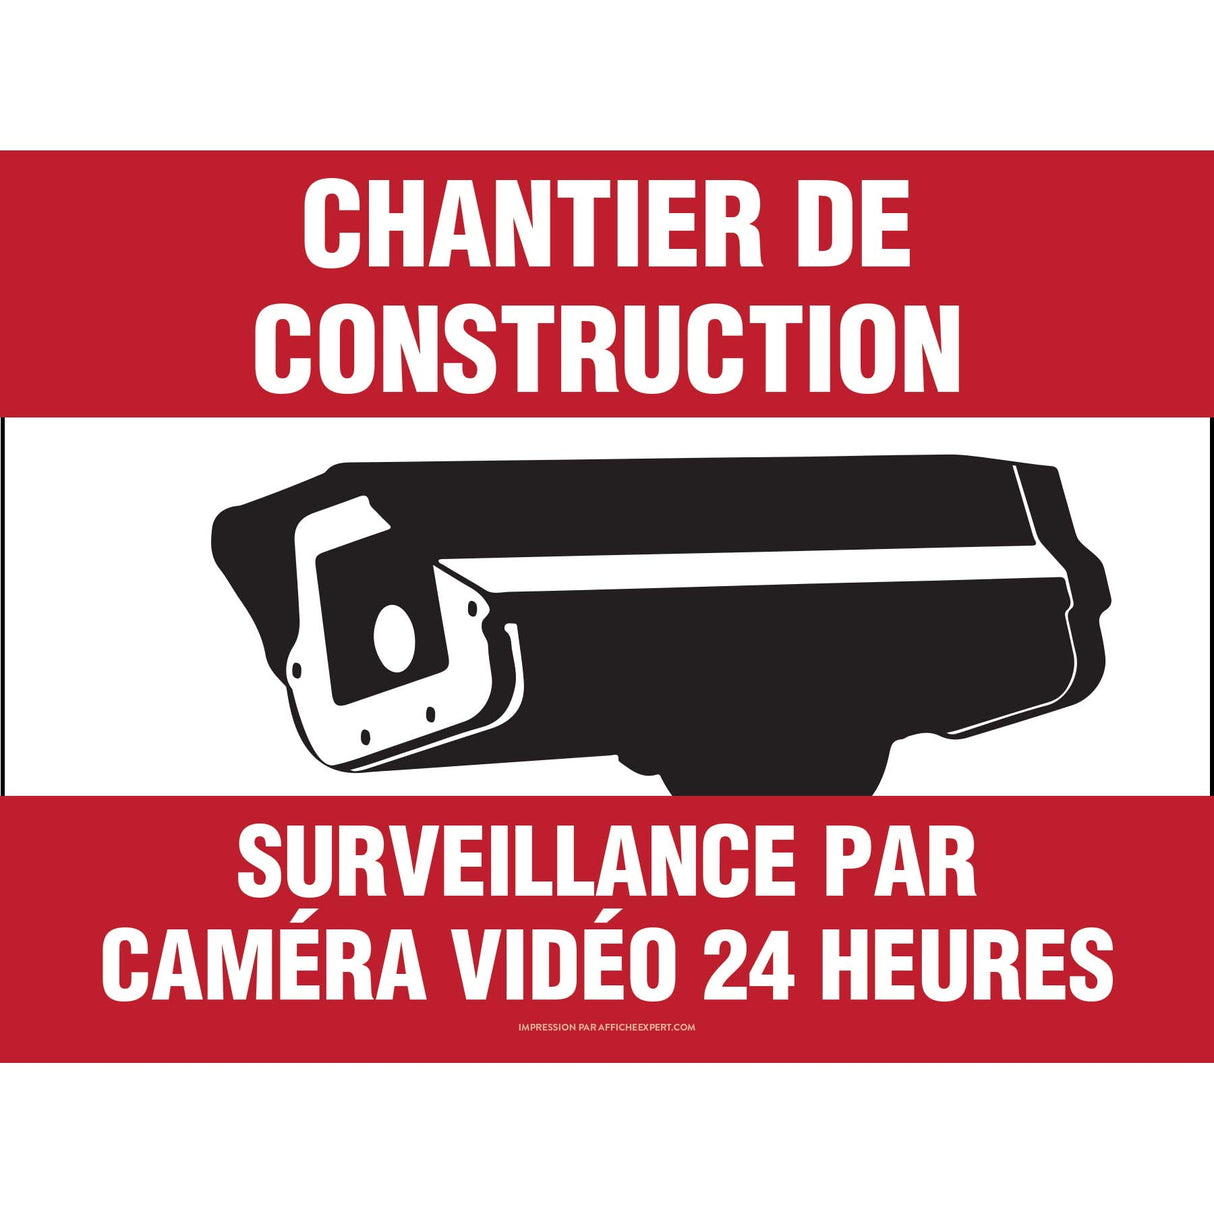 Surveillance par caméra 24 heures (Chantier de construction)